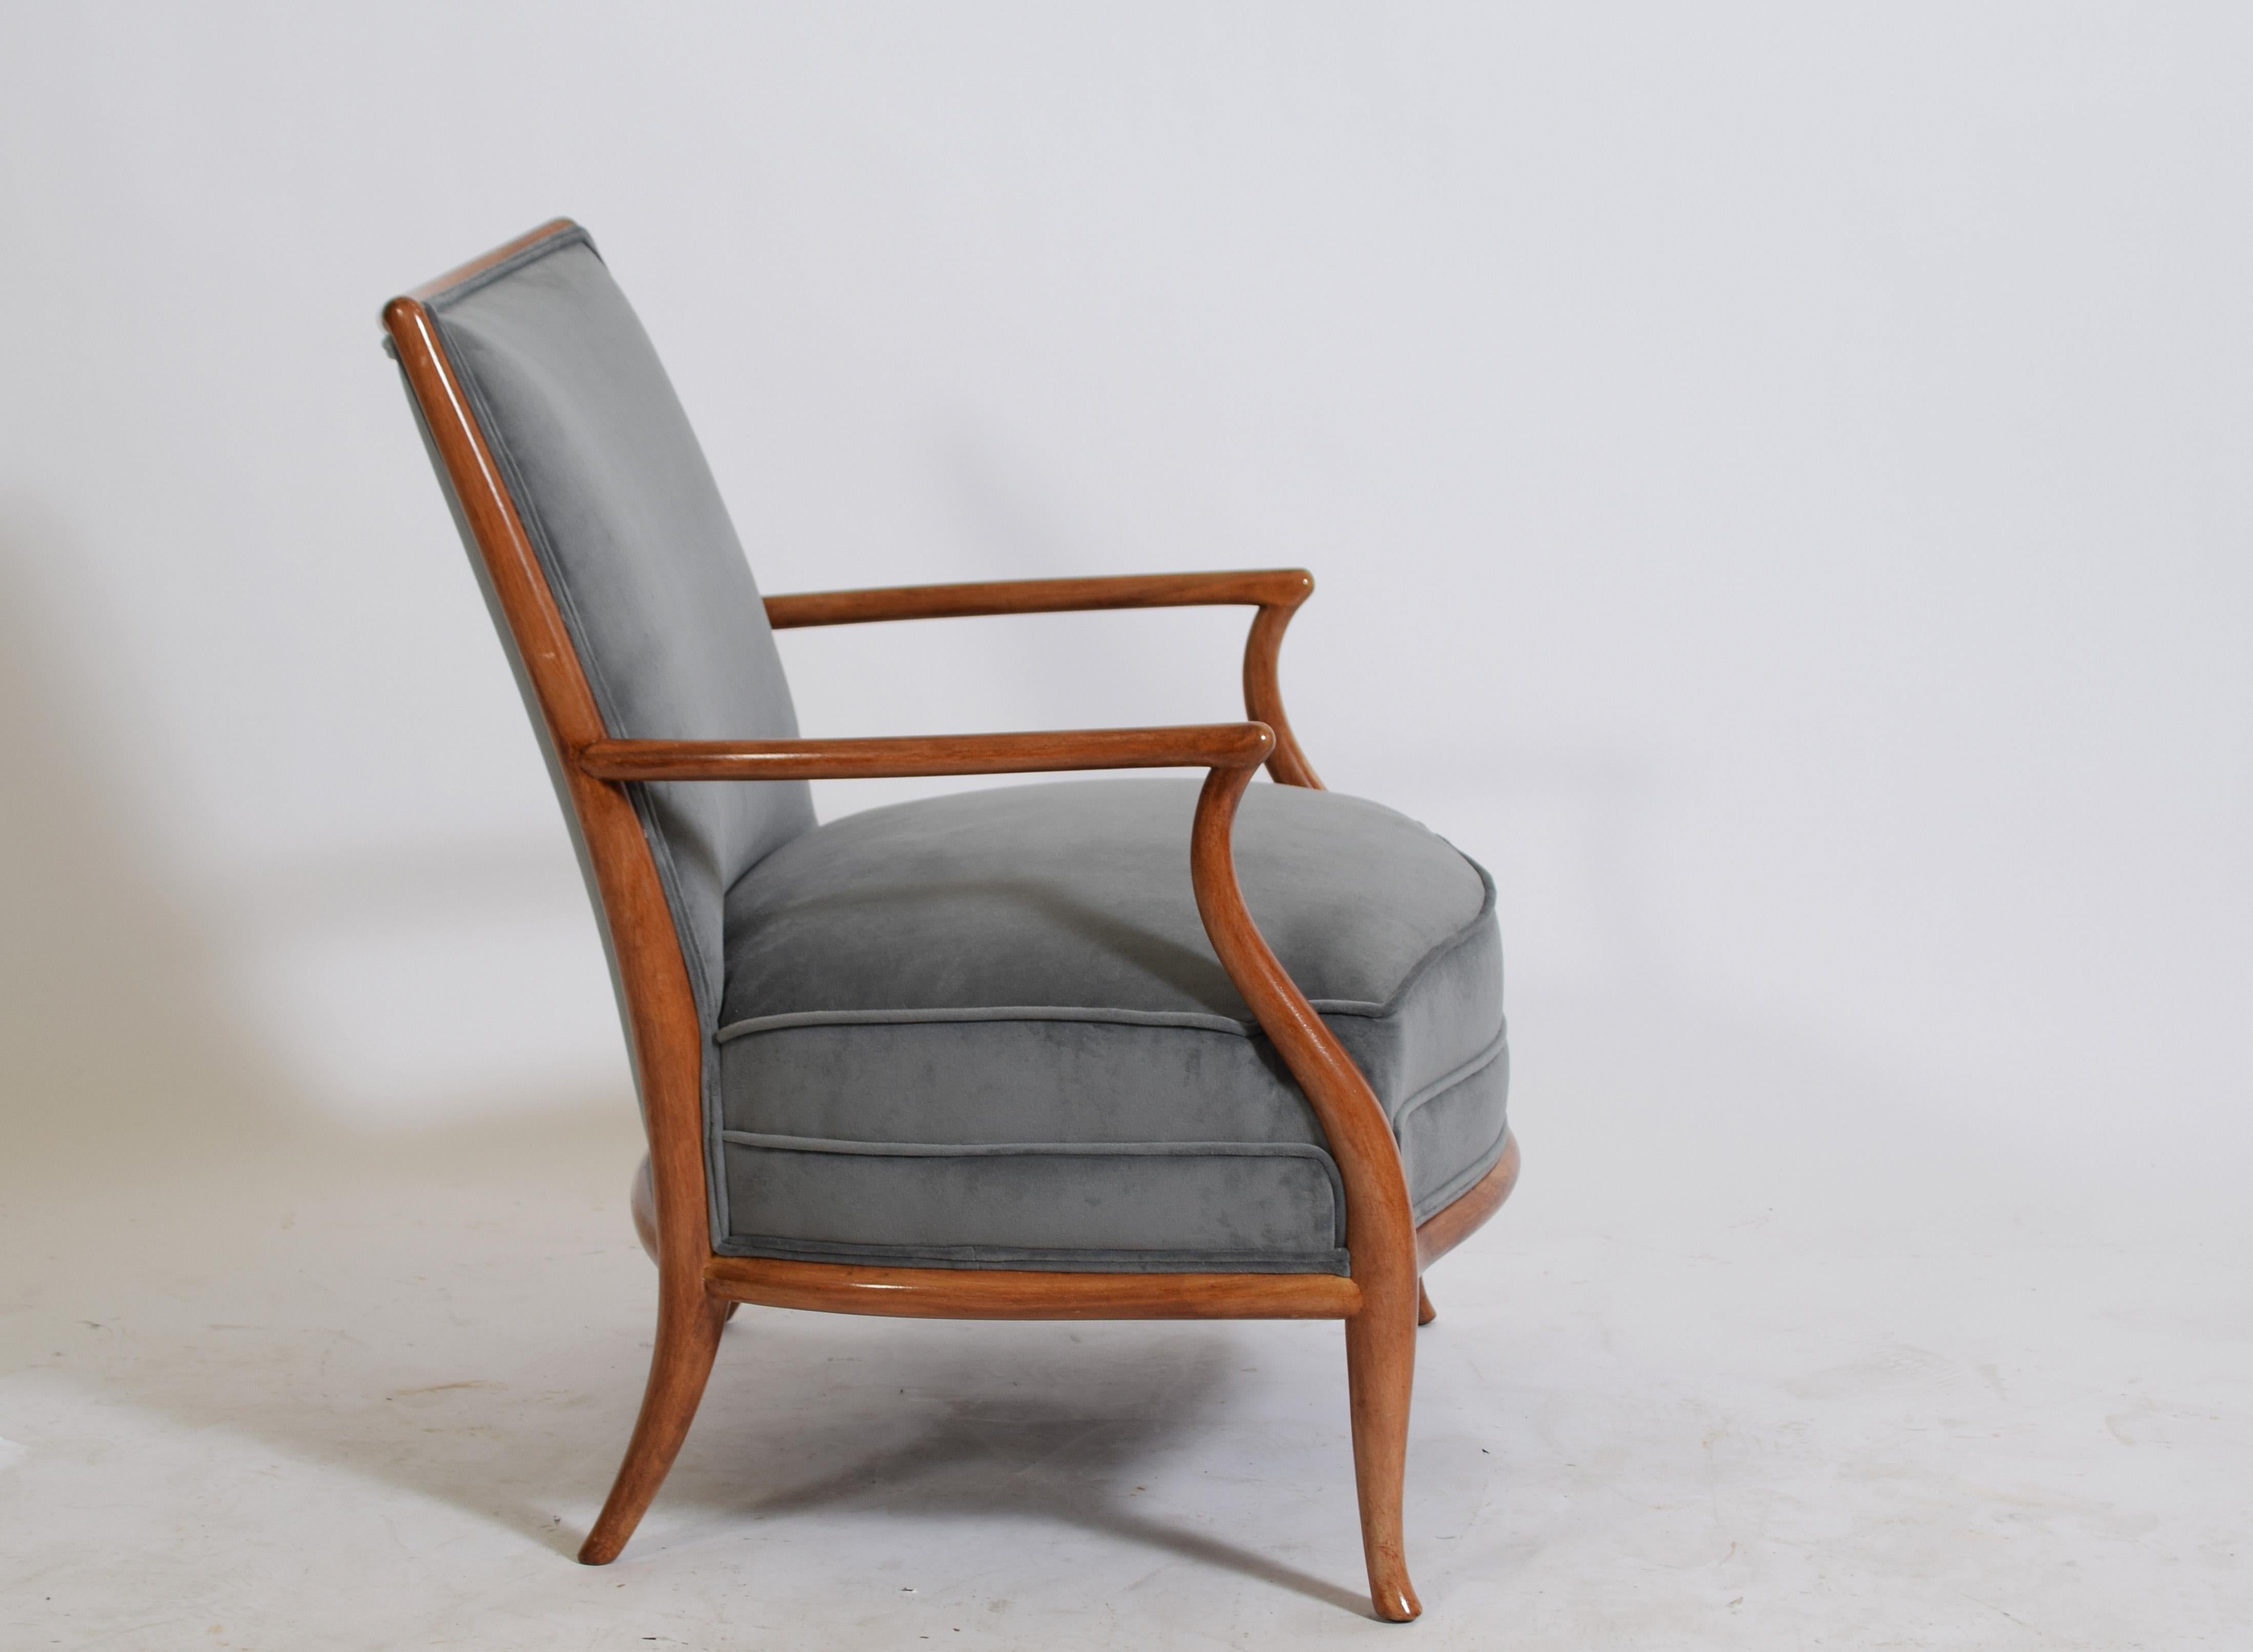 Stilvoller Sessel von T.H Robsjohn-Gibbings für Widdicomb Co. Ahorngestell mit neuer Polsterung, restauriert